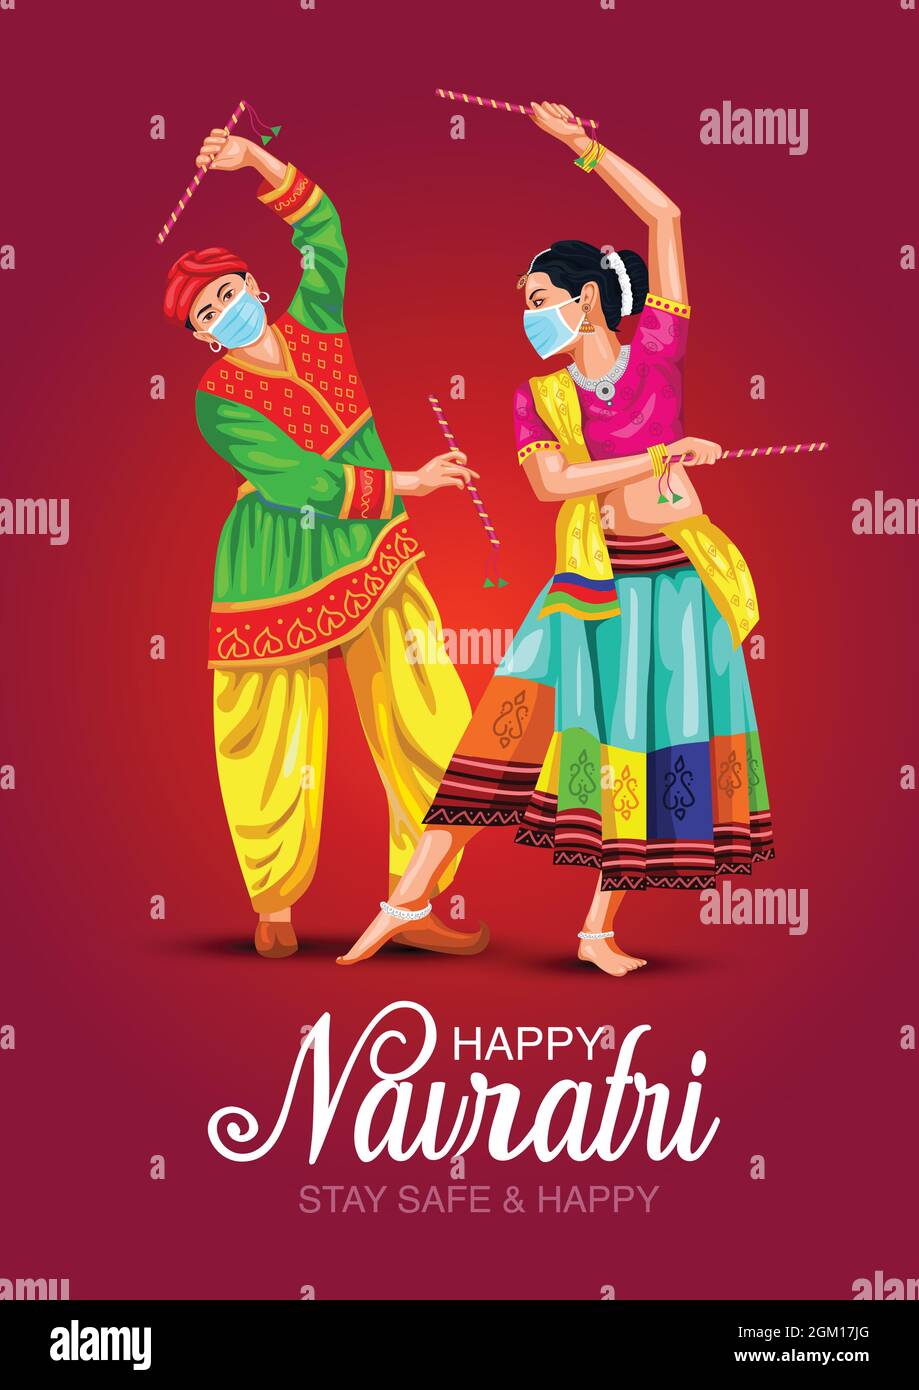 Garba Nacht Poster für Navratri Dussehra Festival von Indien. vektor-Illustration des Paares Dandiya Tanz spielen. Covid Corona Virus Konzept. Stock Vektor